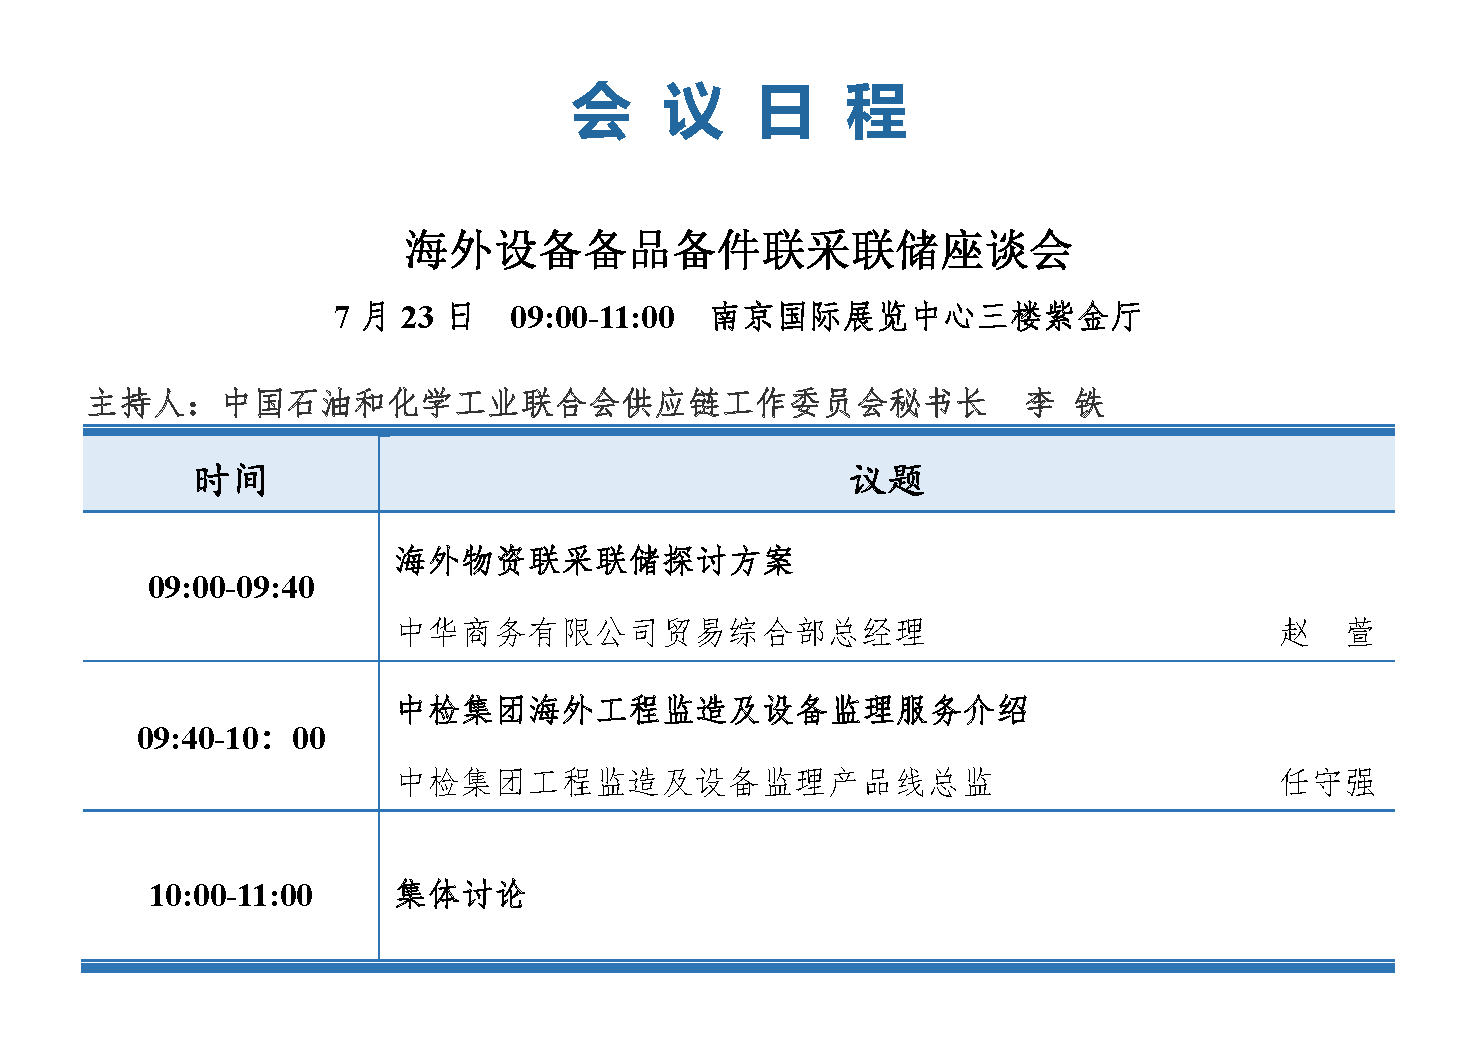 会议手册-2021中国石化行业采购大会_页面_15.png